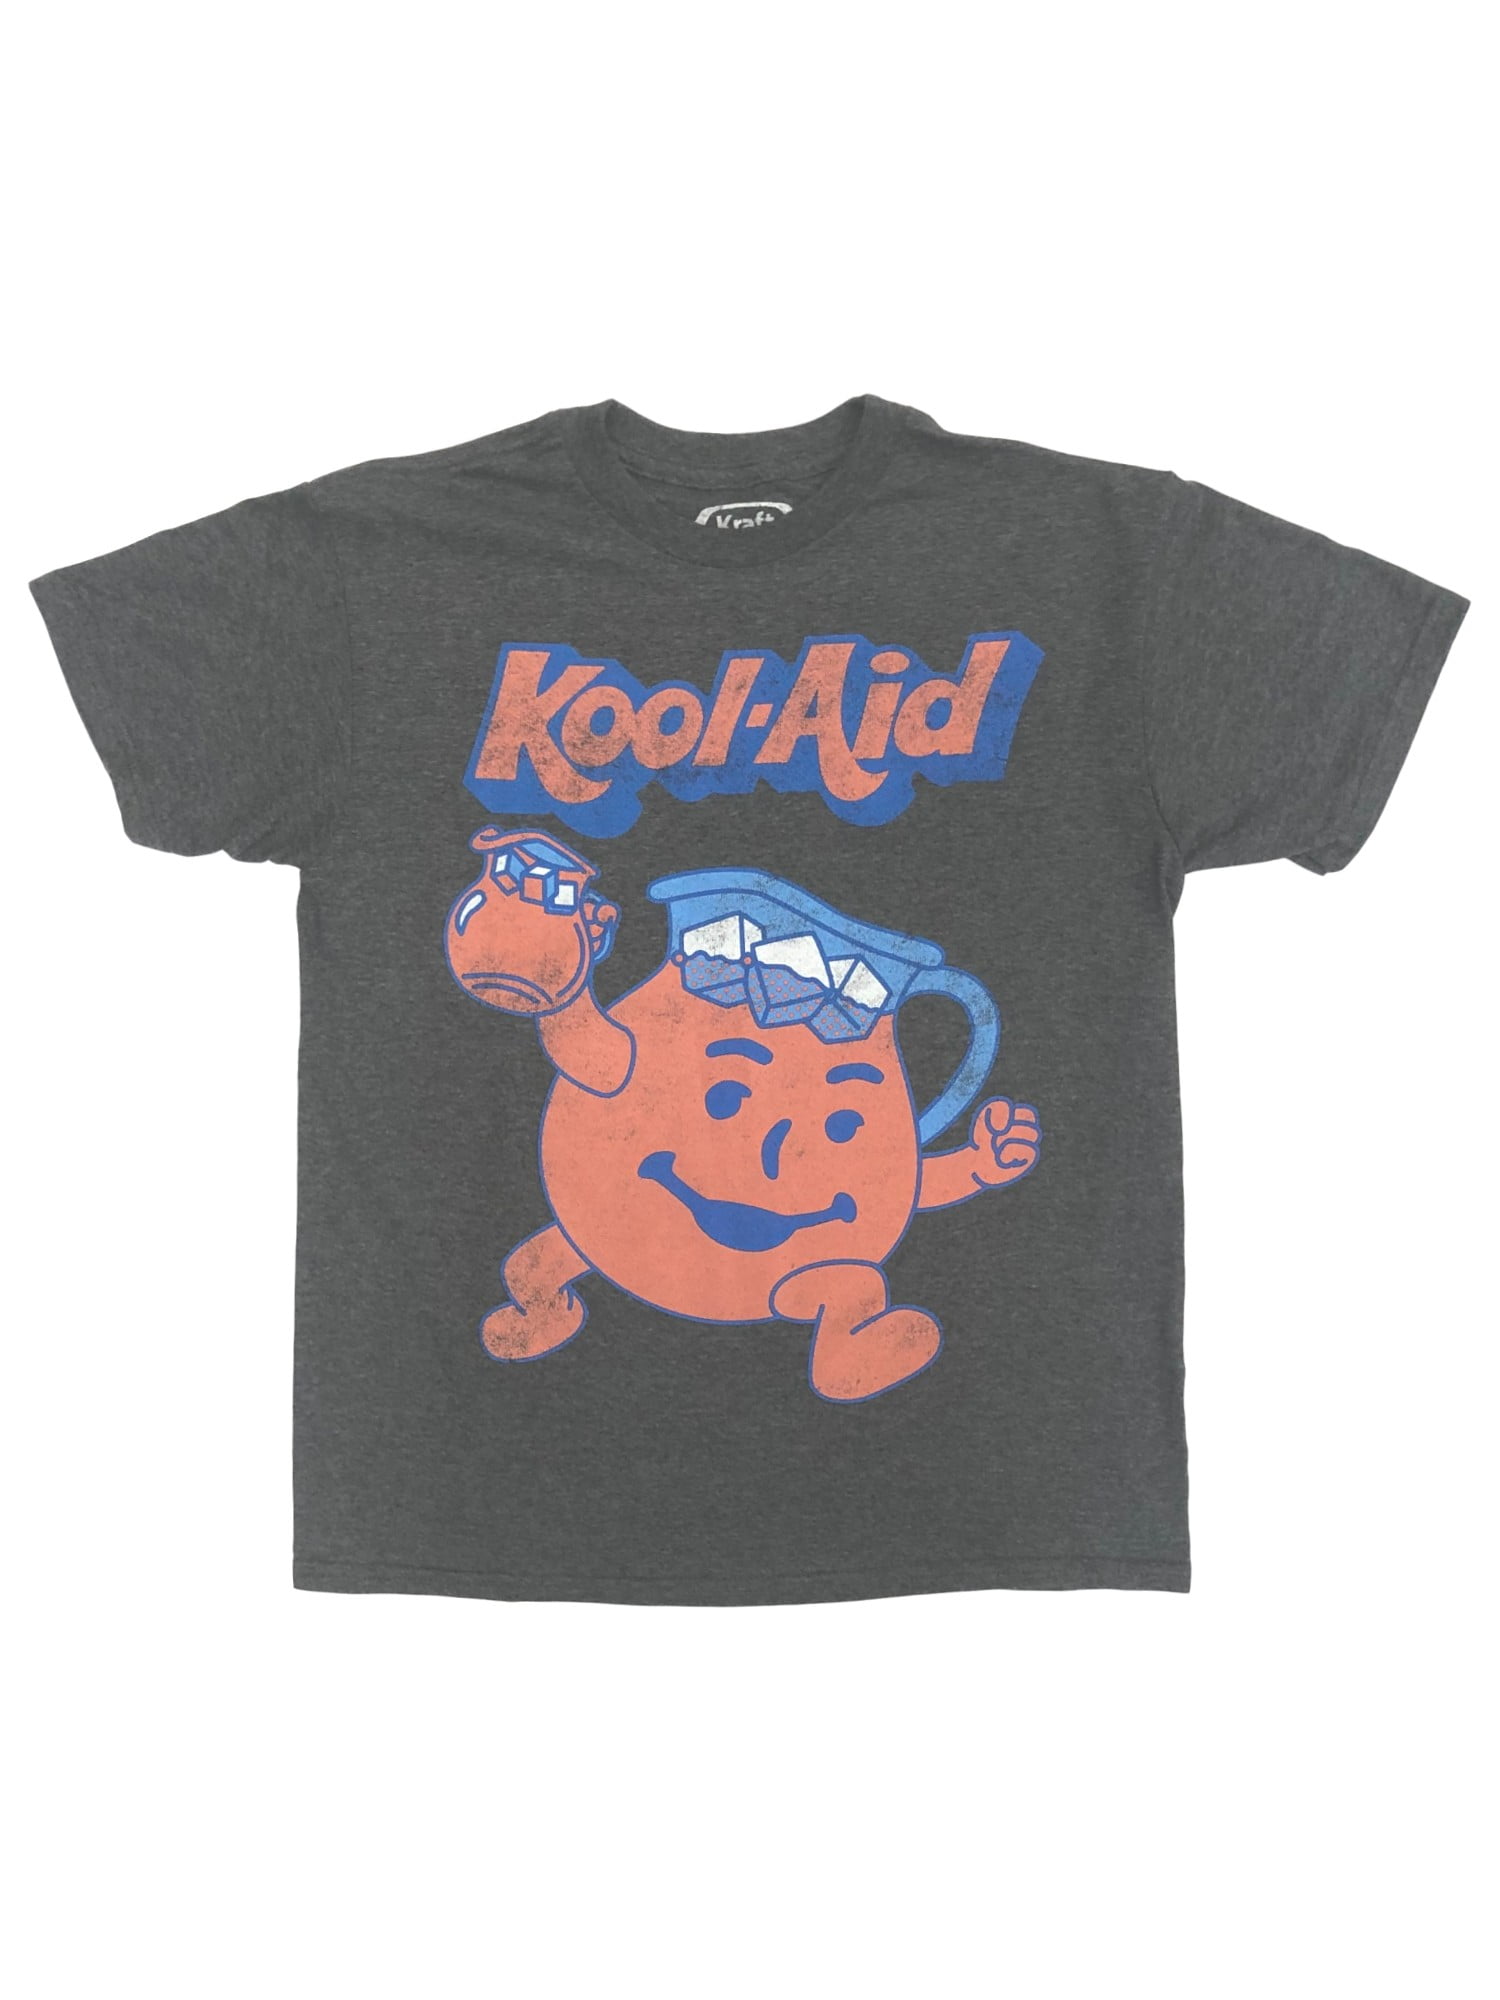 Kool-Aid Boys Gray Distressed Short Sleeve Kool Aid Guy T-Shirt Shirt ...
 Kool Aid Shirt